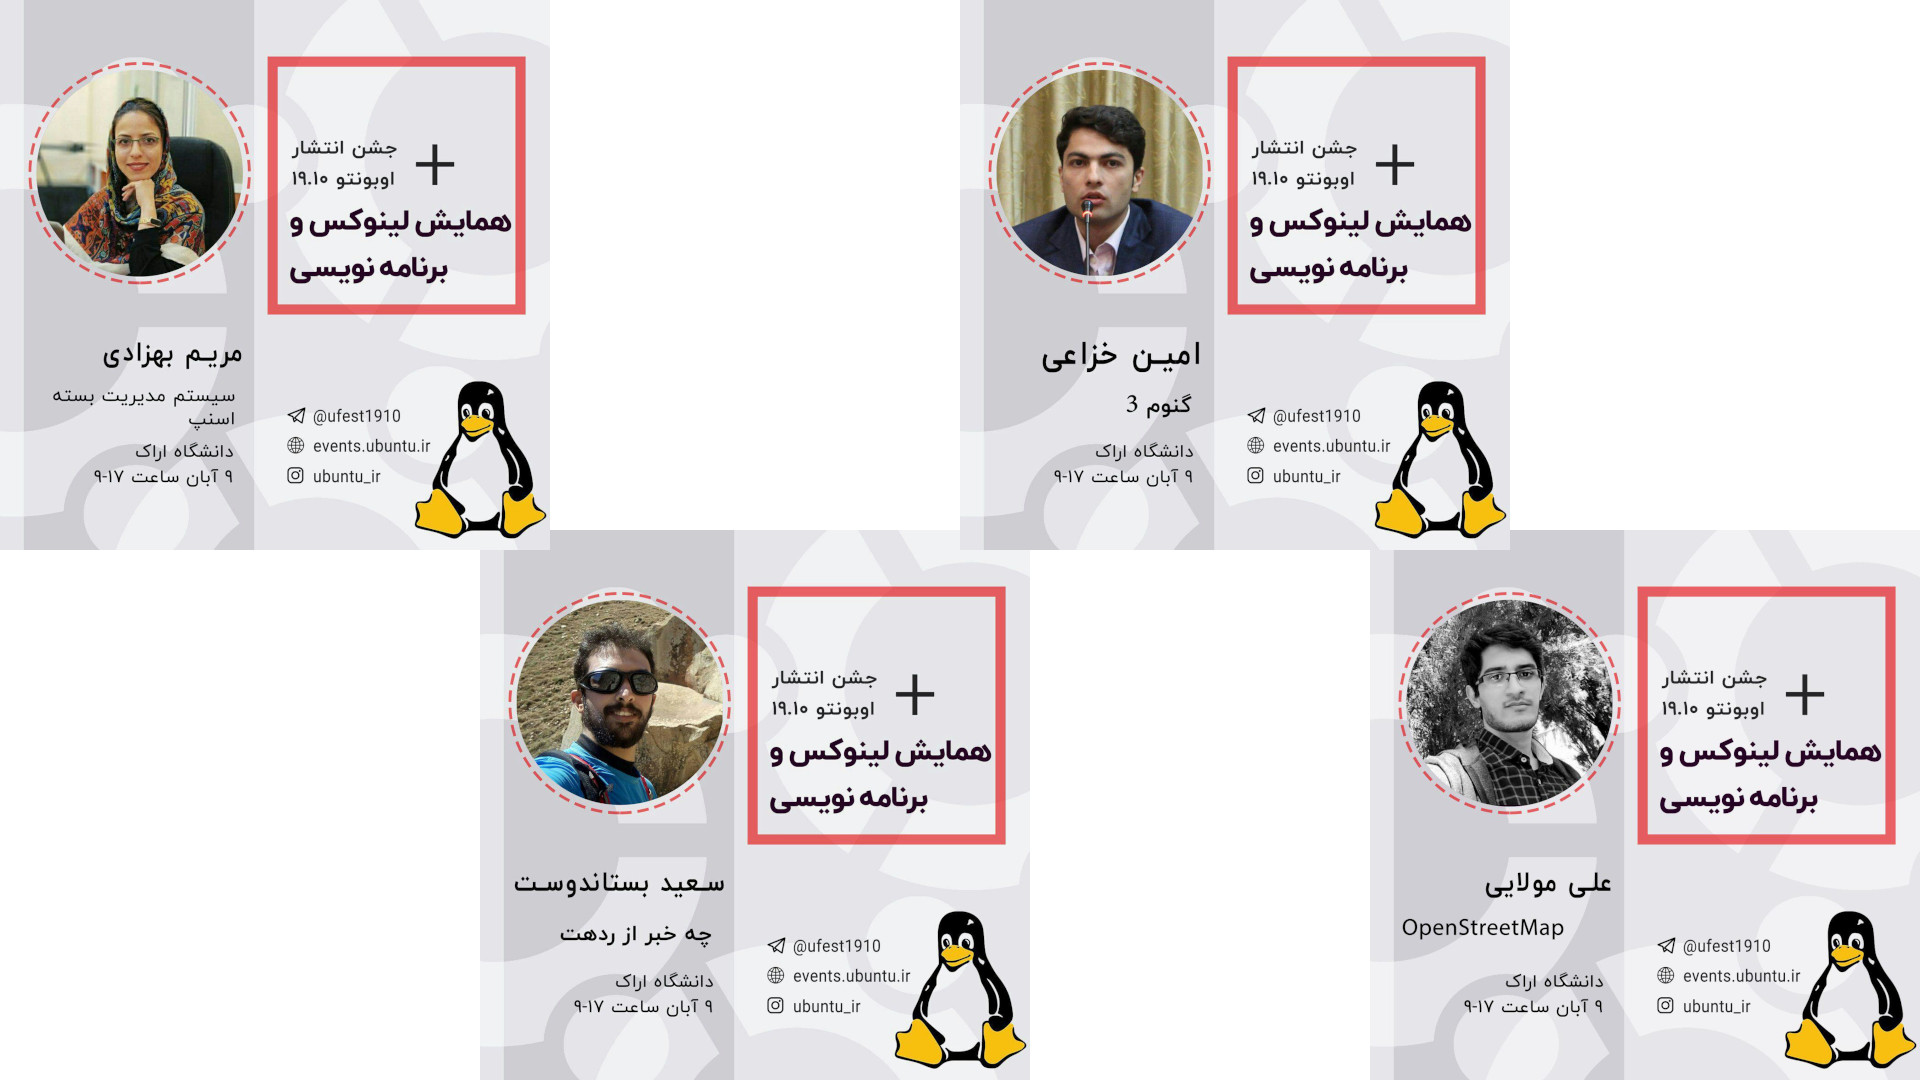 ارائه دهندگان شیرازلاگ در همایش لینوکس و برنامه نویسی اراک